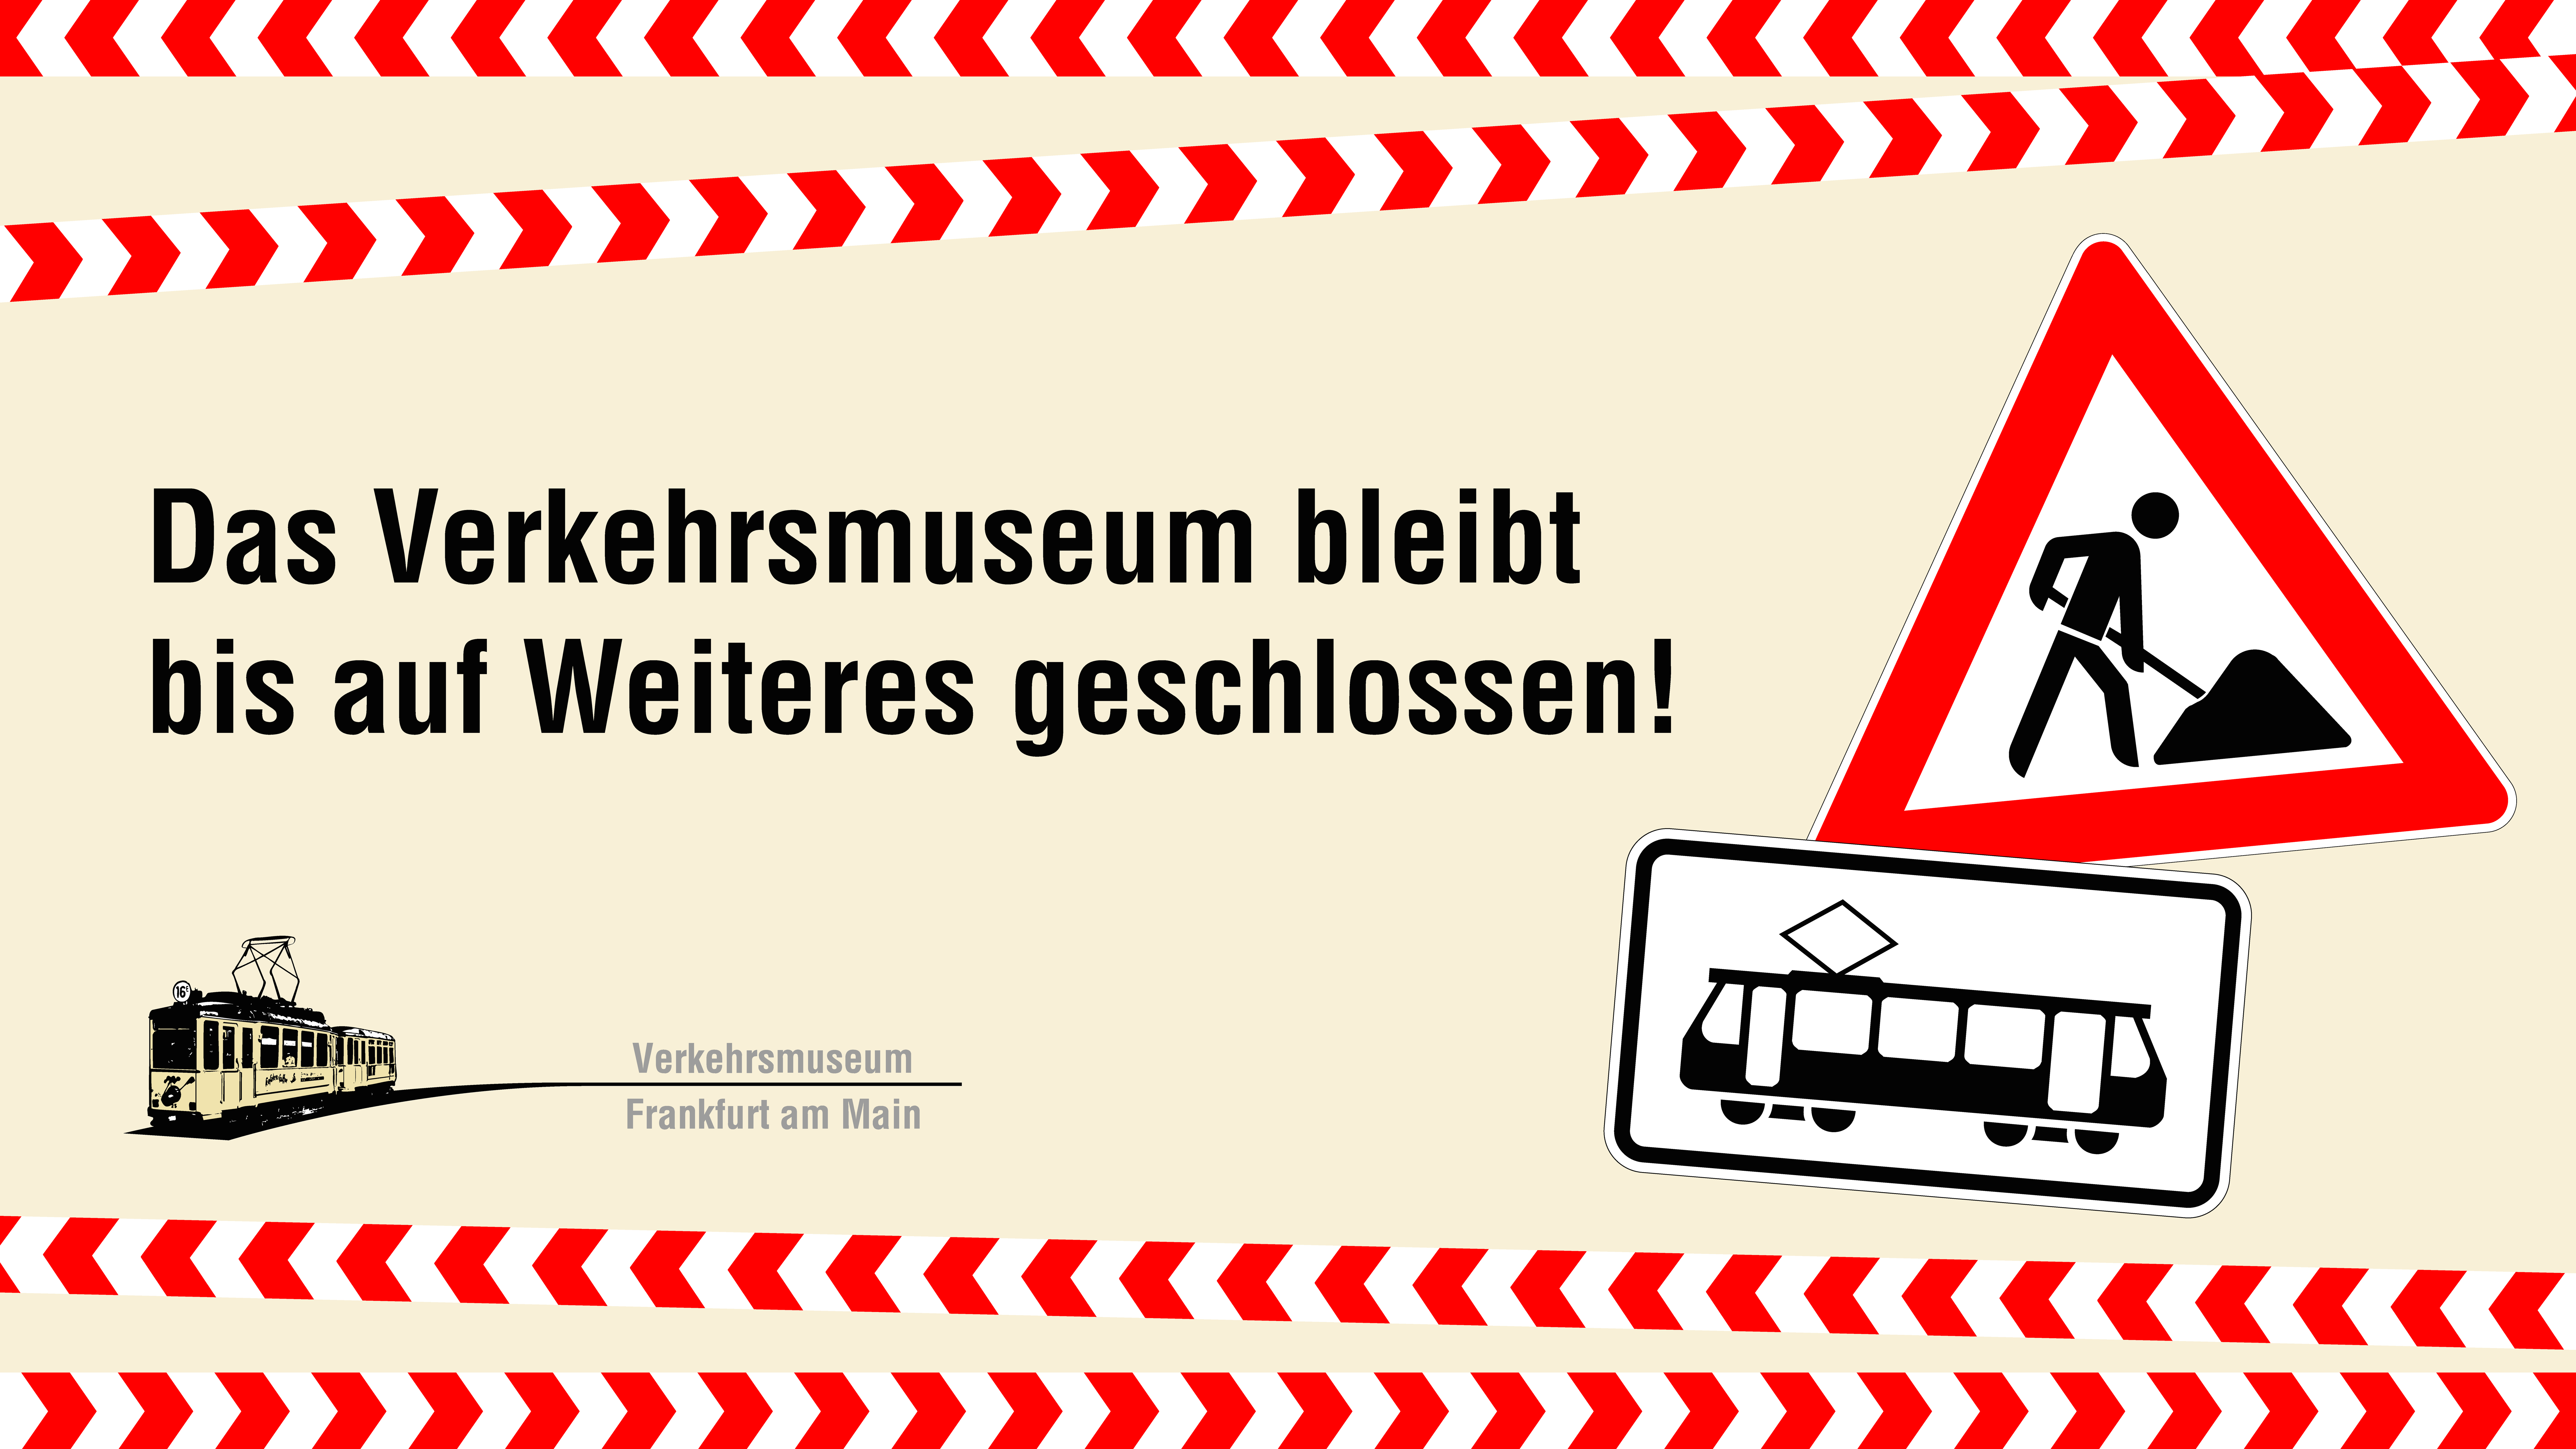 Renovierungsarbeiten im Verkehrsmuseum - Bis auf Weiteres geschlossen!